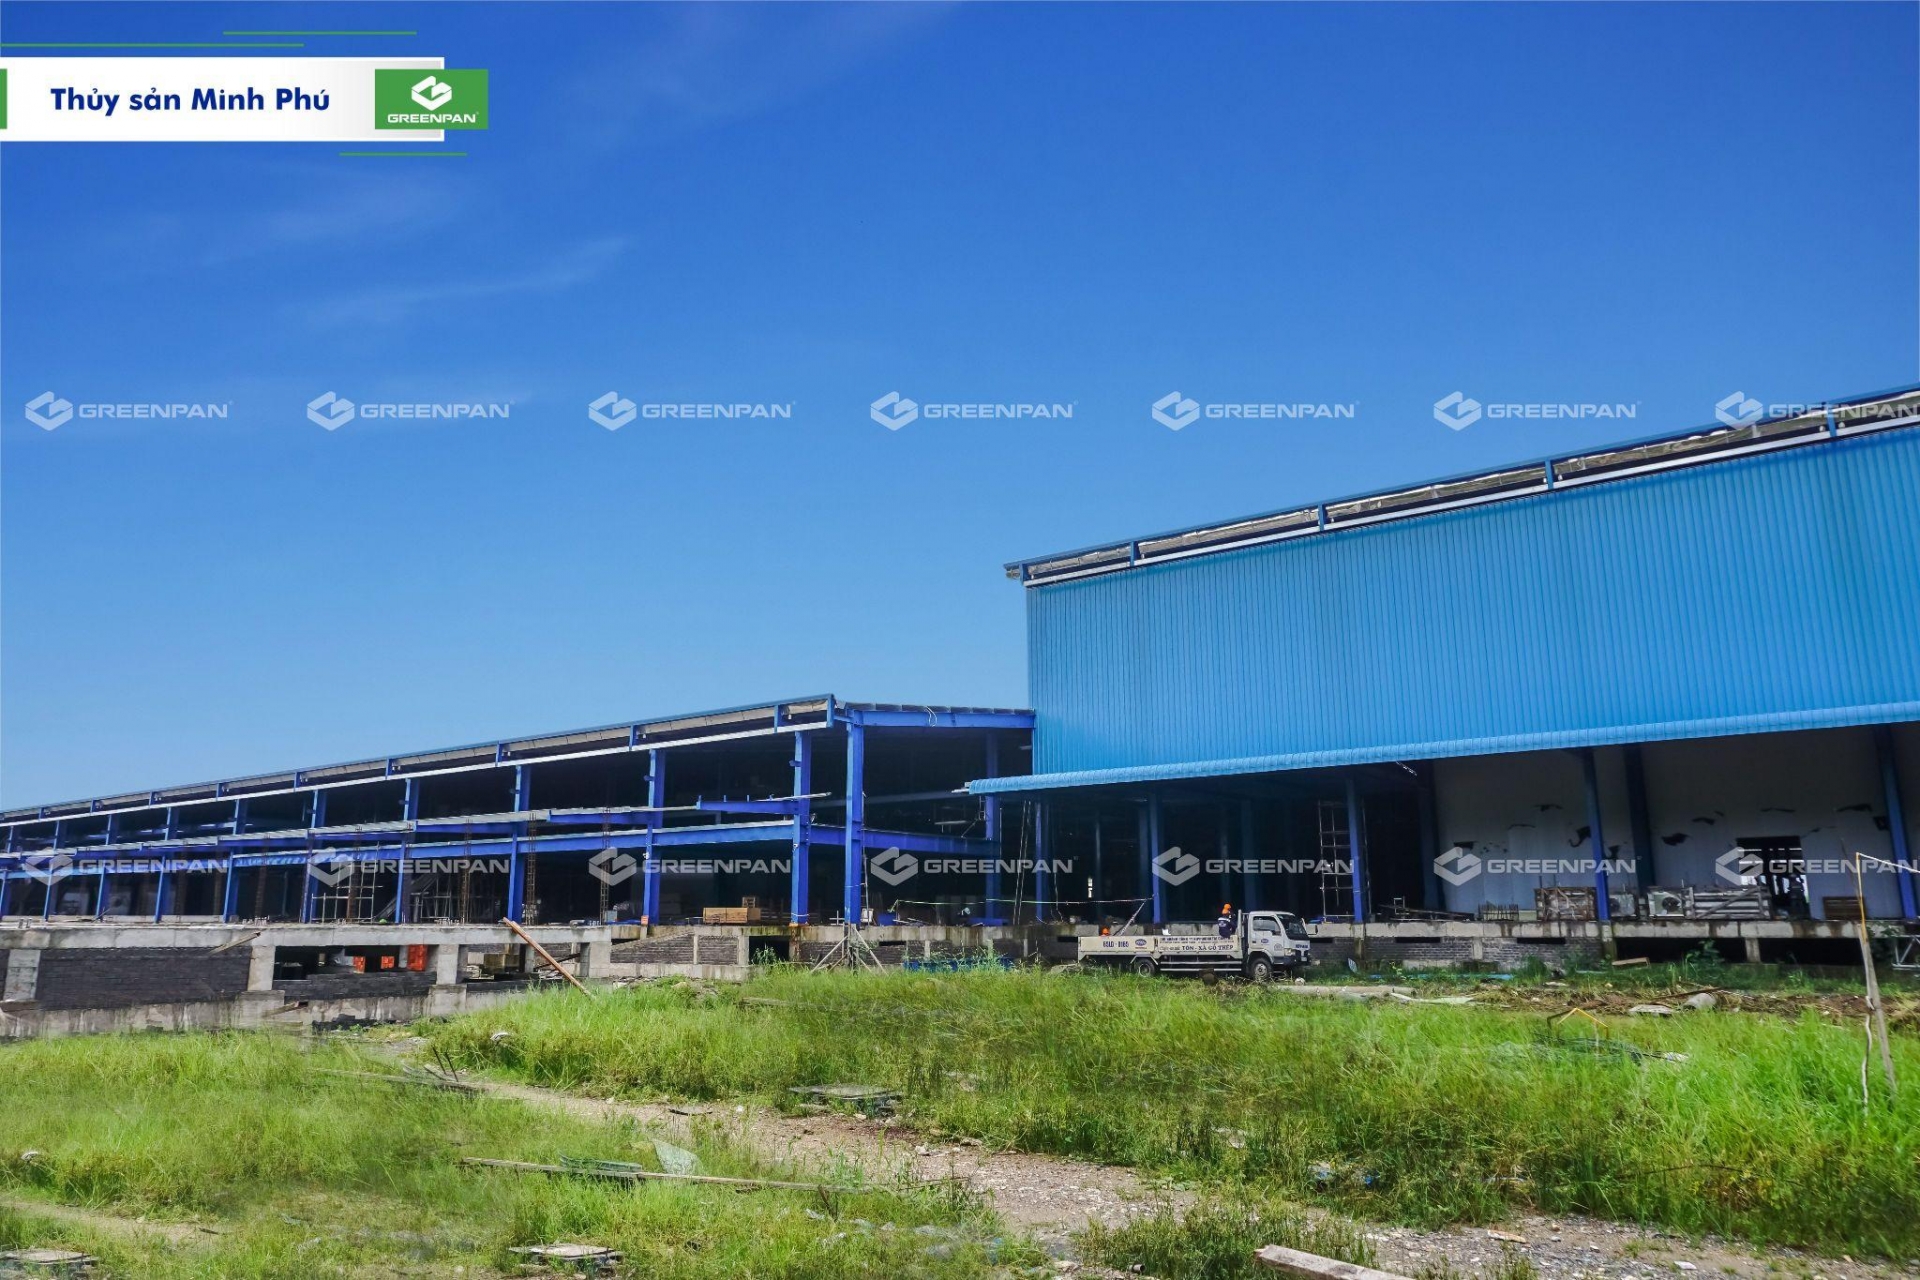 GREENPAN VIỆT NAM “bắt tay” Công ty thuỷ sản Minh Phú trong dự án mở rộng nhà máy Minh Phú Hậu Giang